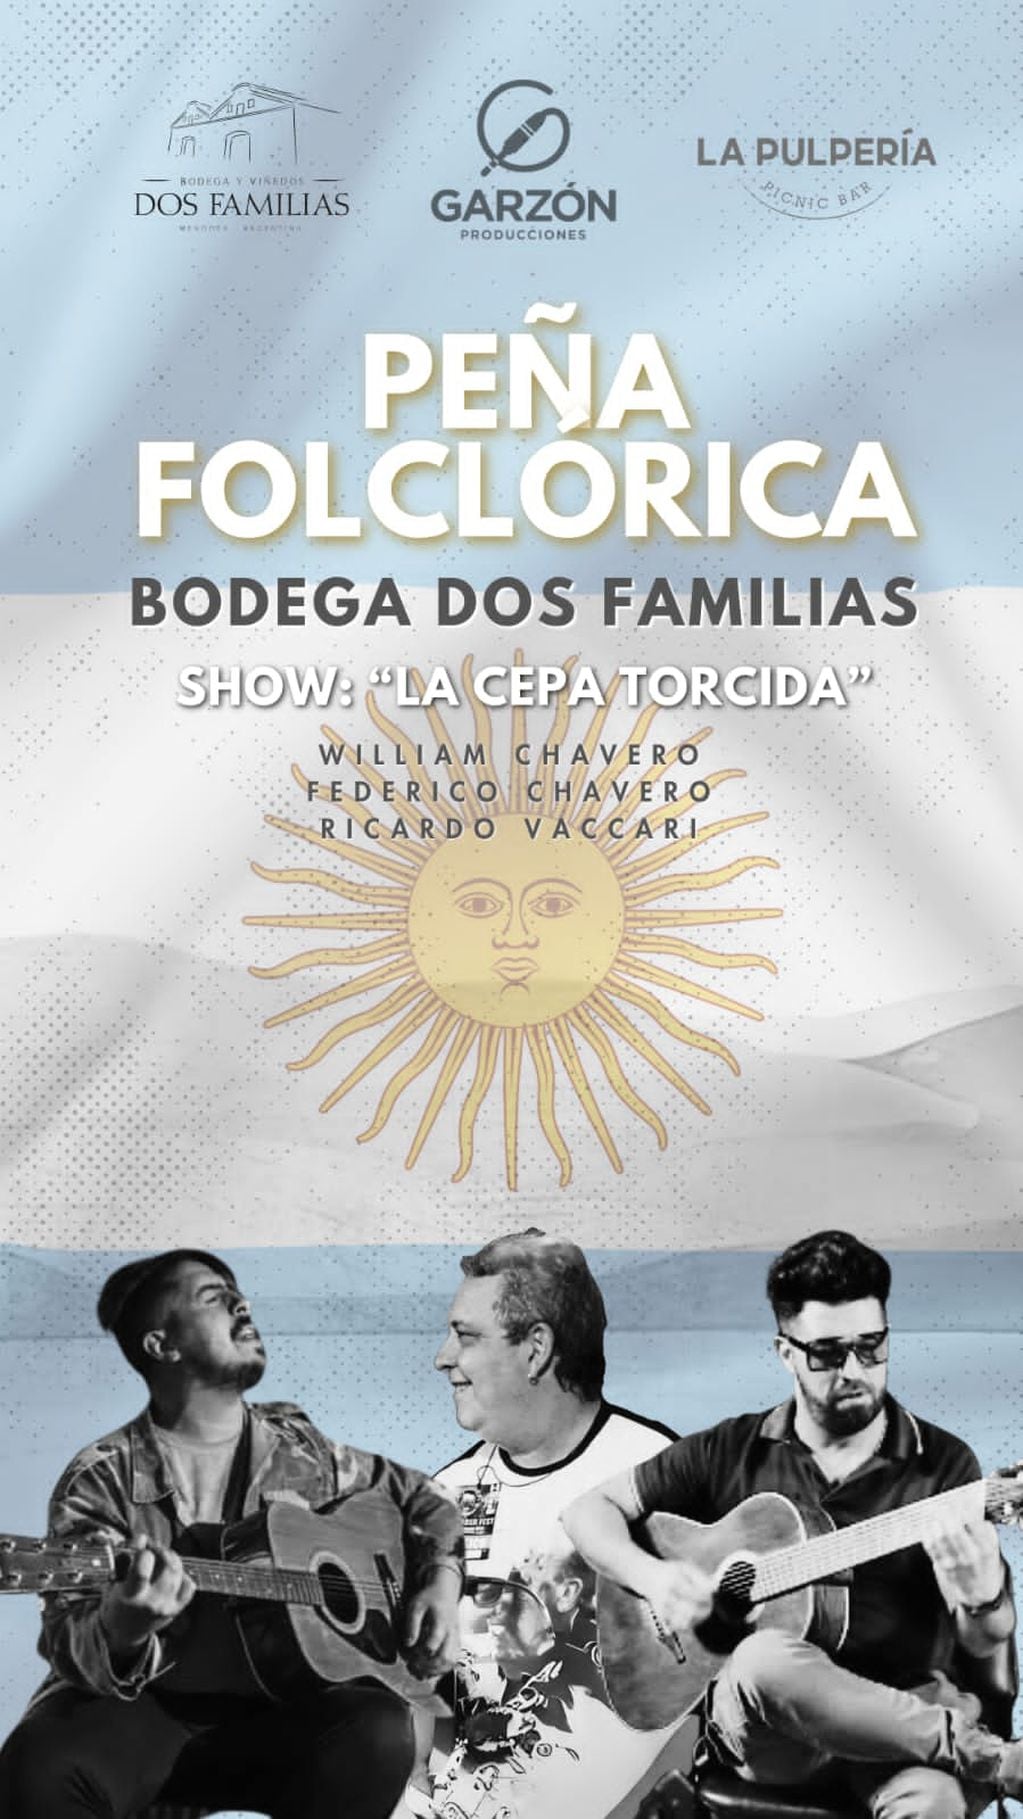 Peña Folclórica por Bodega Dos Familias en La Pulpería.